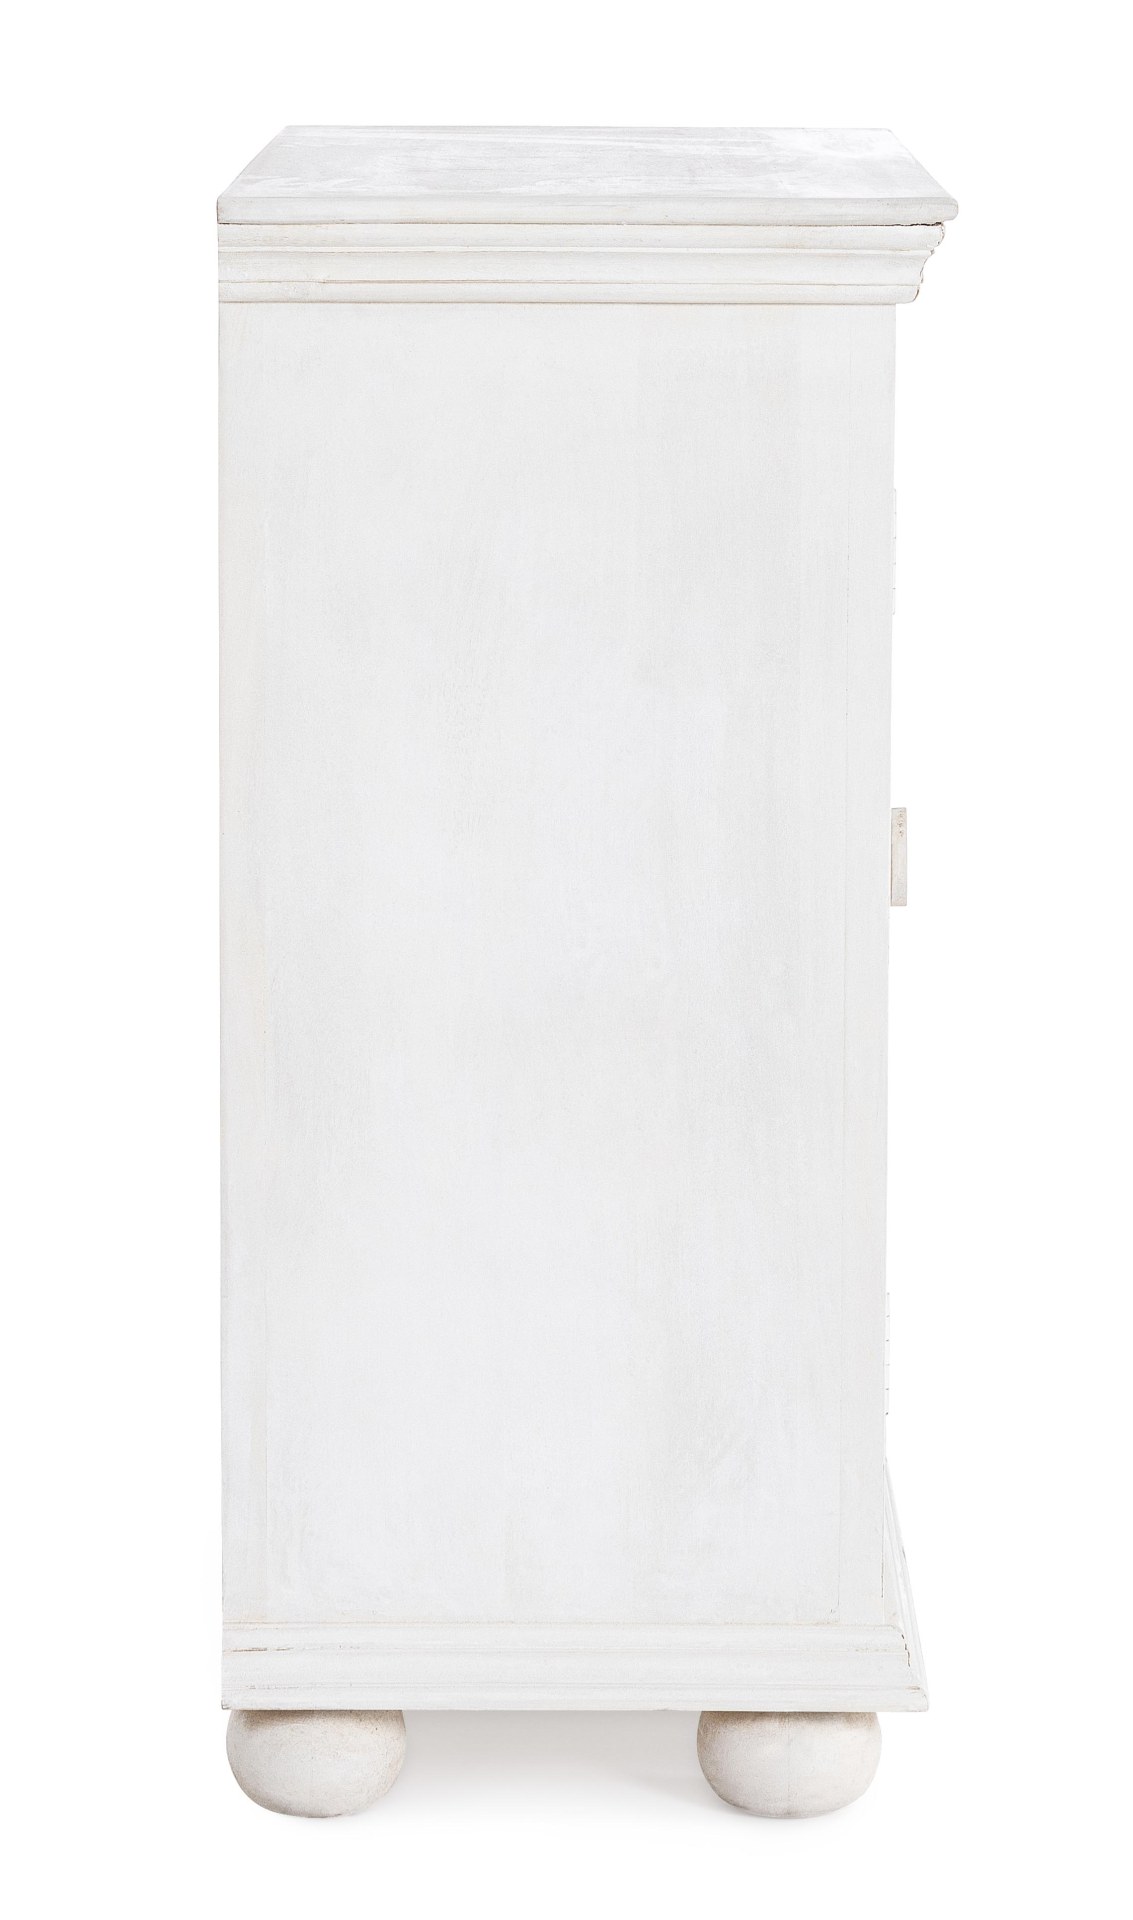 Das Sideboard Alina überzeugt mit seinem klassischen Design. Gefertigt wurde es aus Mango-Holz, welches einen weißen Farbton besitzt. Das Gestell ist auch aus Mango-Holz. Das Sideboard verfügt über zwei Türen. Die Breite beträgt 96 cm.